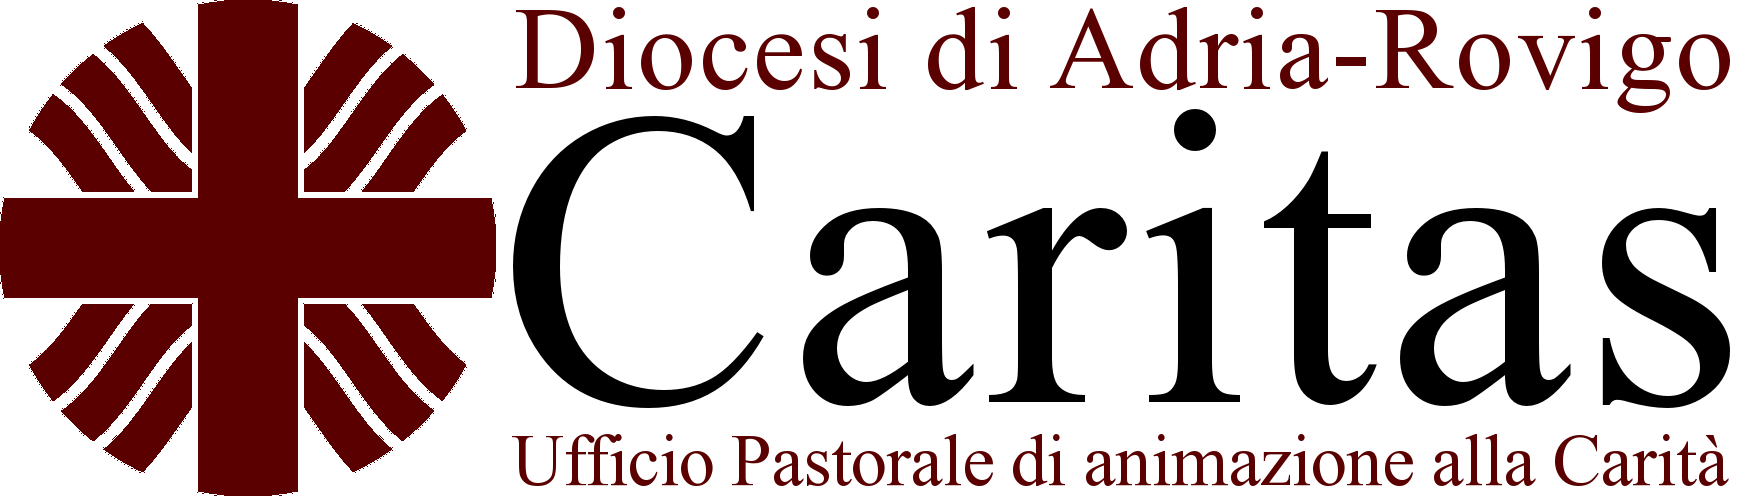 Caritas diocesana di Adria-Rovigo